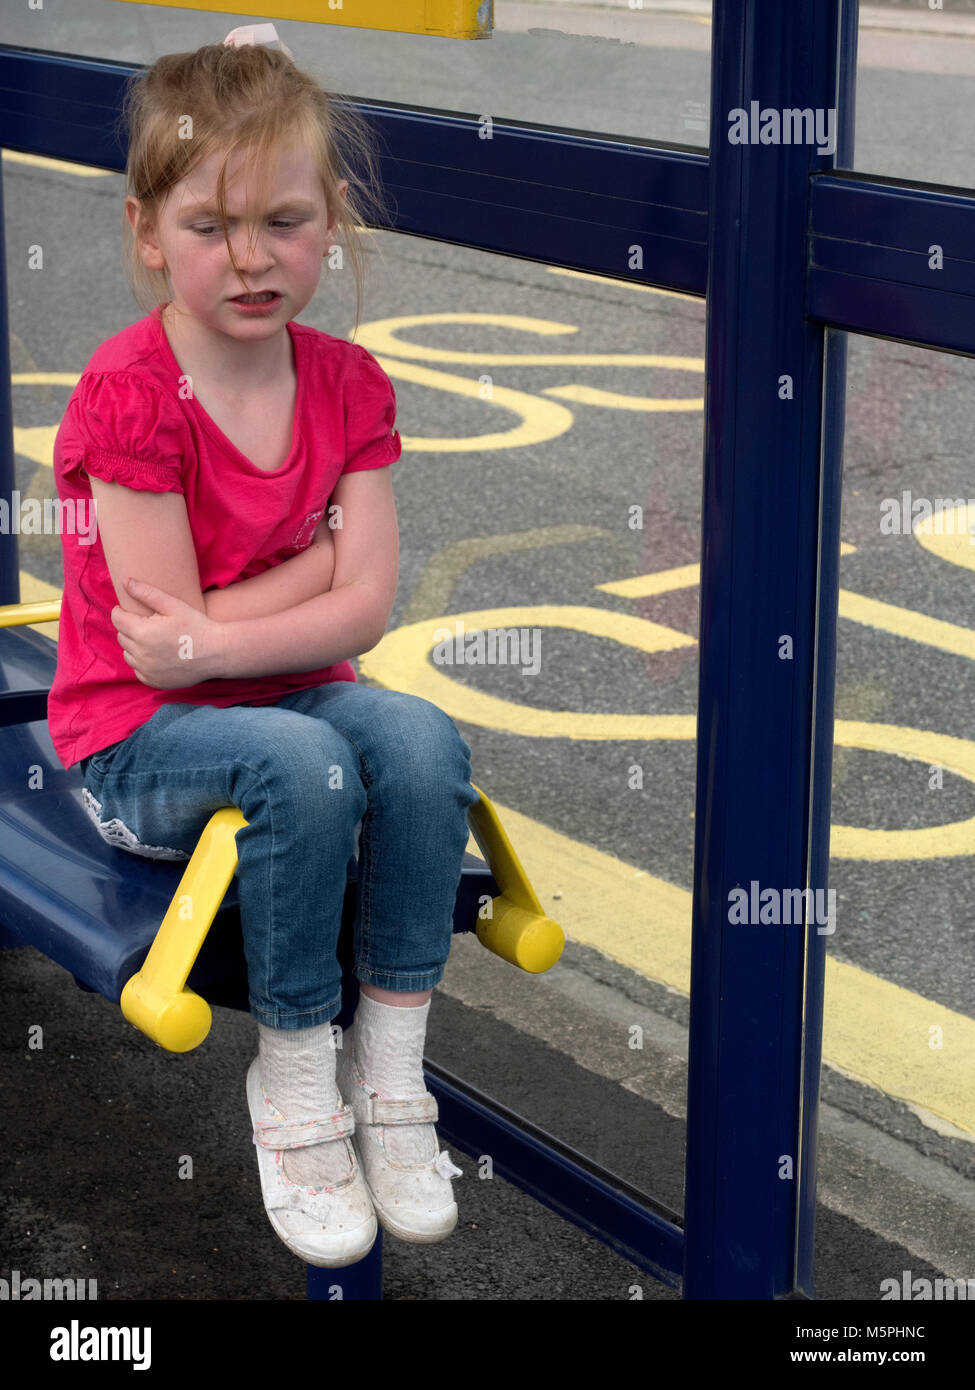 Jeune fille assise sur un siège d'abri de bus regardant la croix avec les bras pliés, Portsmouth, Hampshire, Angleterre, Royaume-Uni Banque D'Images